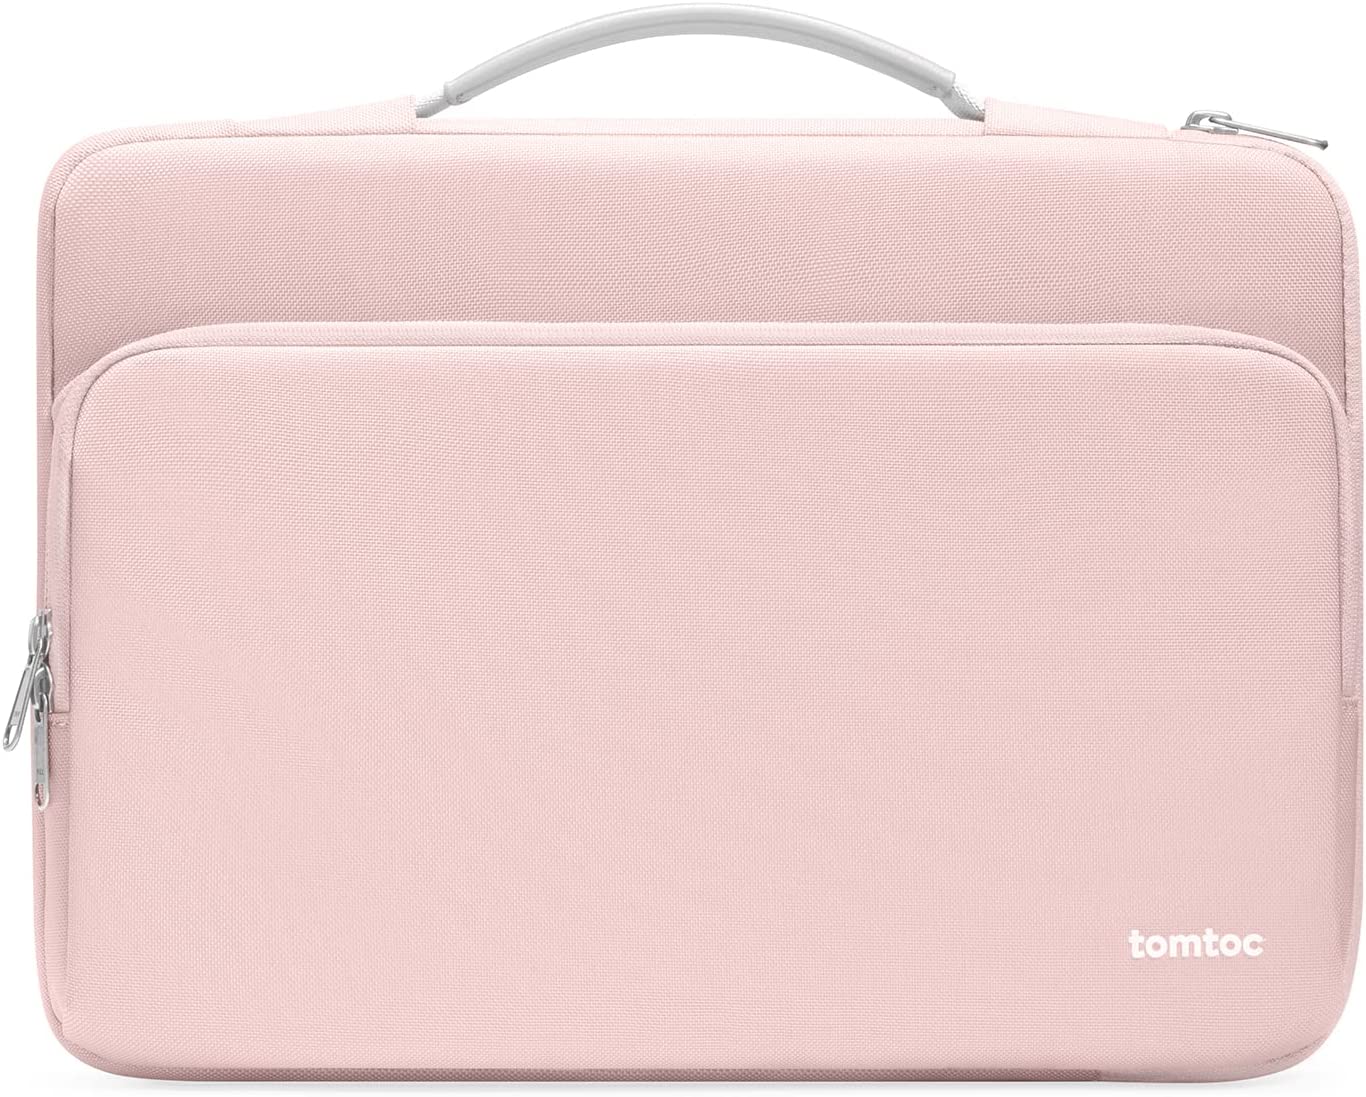 Tomtoc Defender-A14 Laptop Handbag 14 inch - Pink